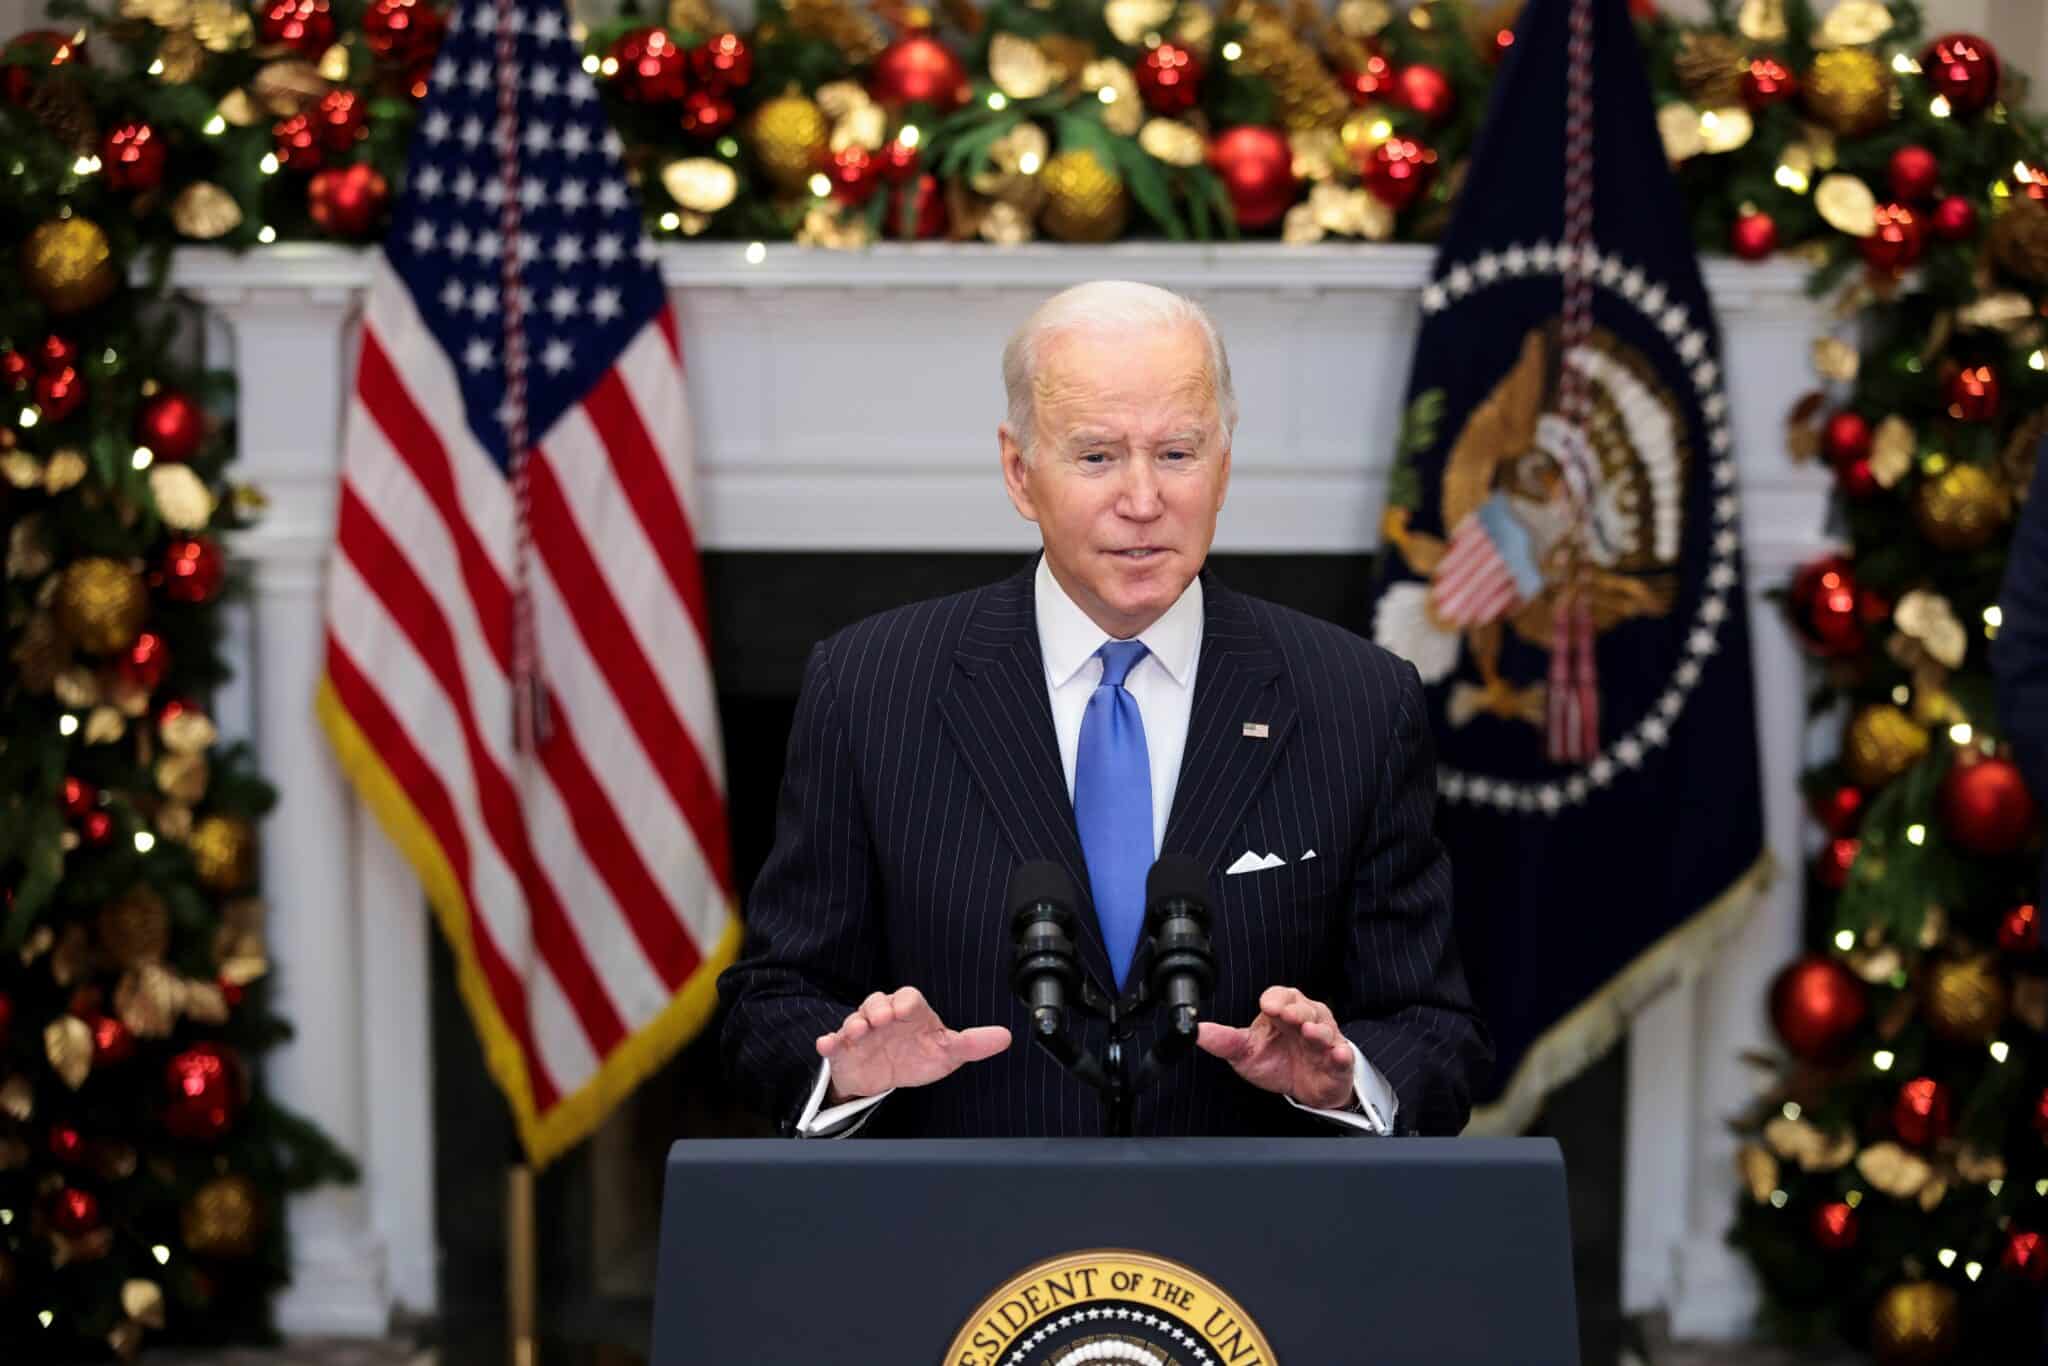 Joe Biden, en su discurso a la nación ante la irrupción de ómicron.